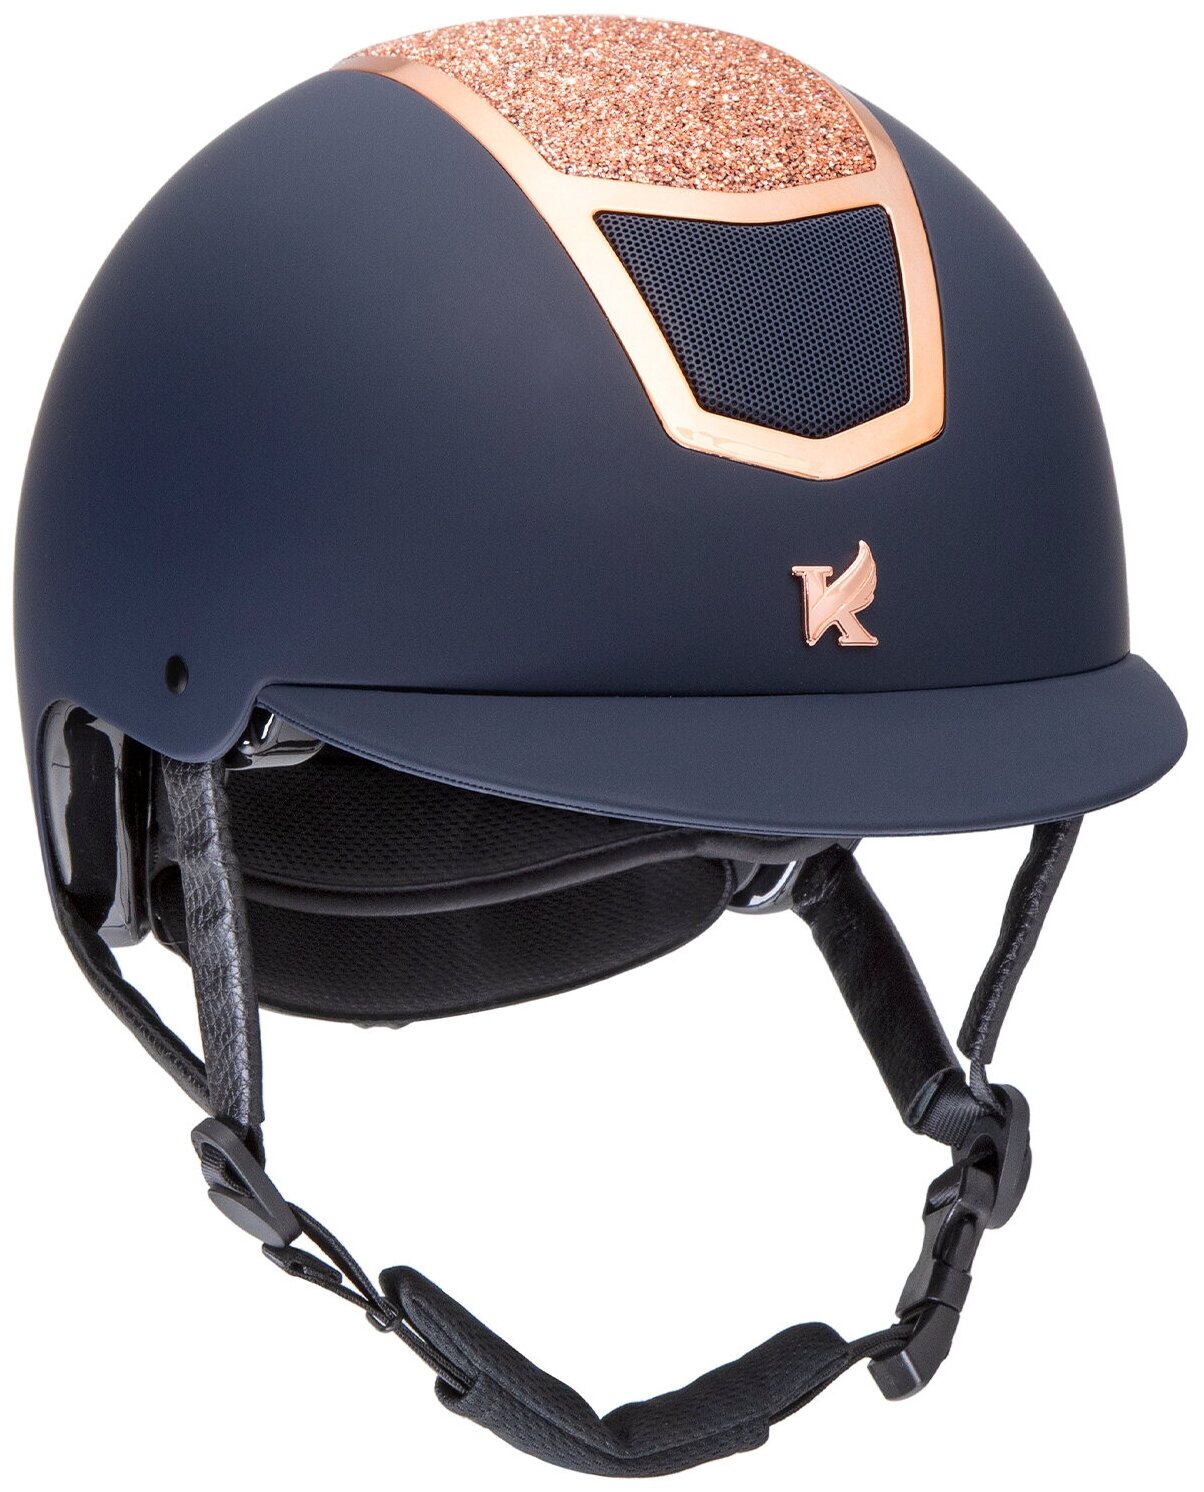 Шлем для верховой езды с регулировкой SHIRES Karben "Valentina", обхват головы 53-55 см, синий/розовое золото (Великобритания)